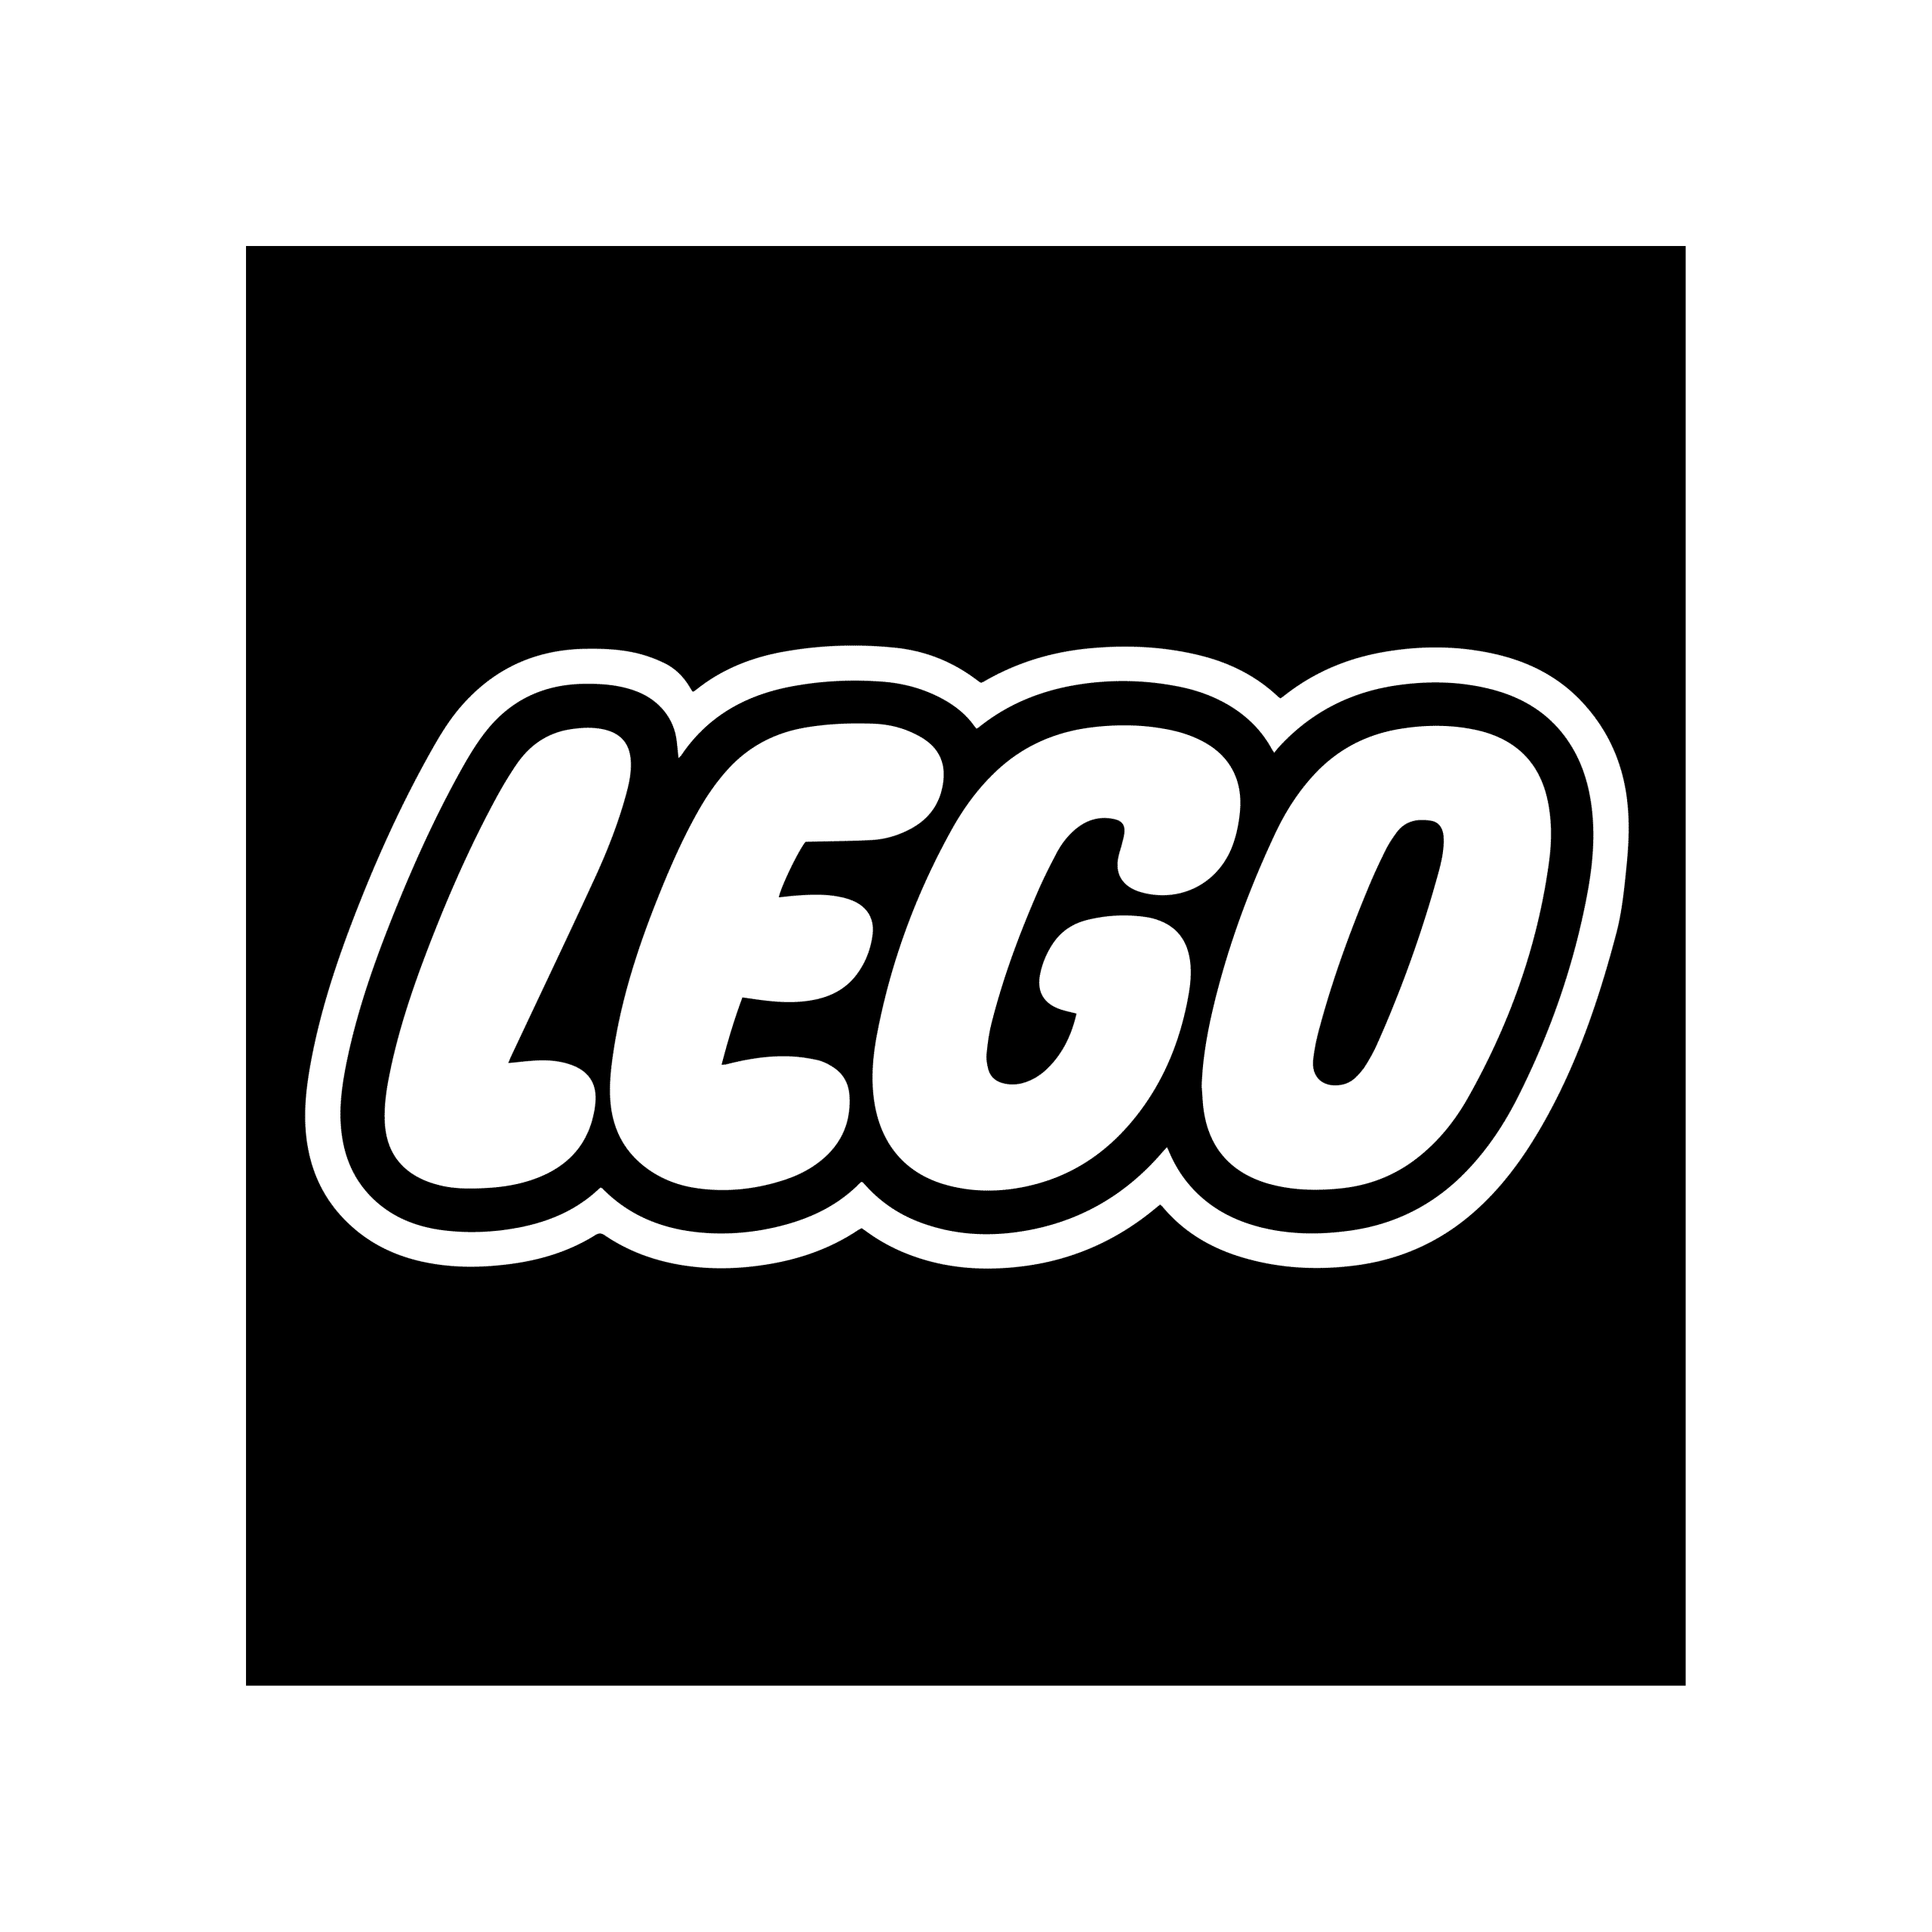 Lego-01-01